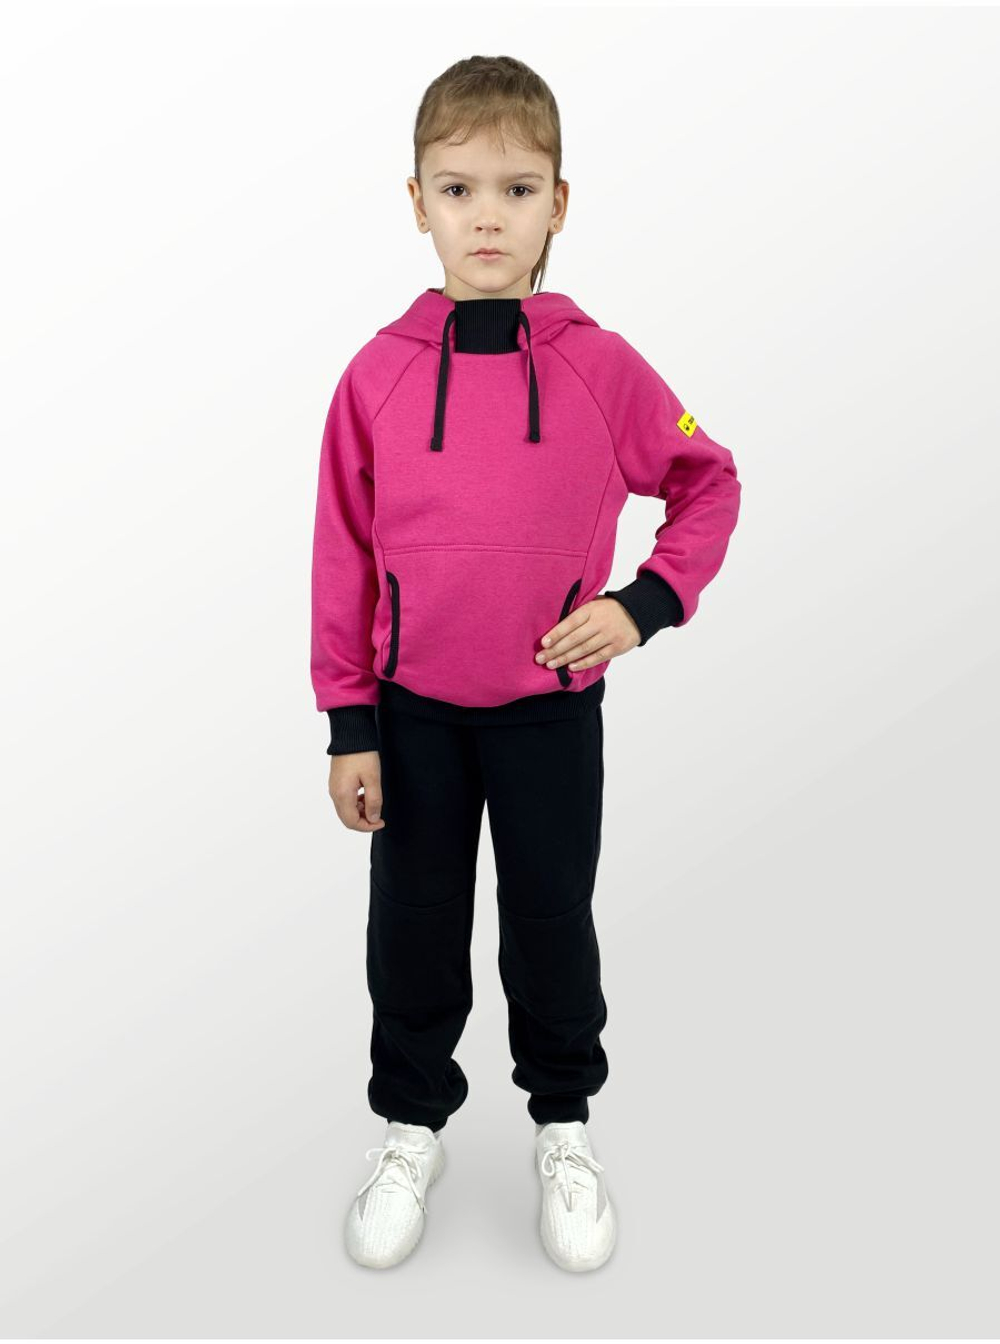 Худи для детей, модель №4, с капюшоном, рост 92 см, фуксия